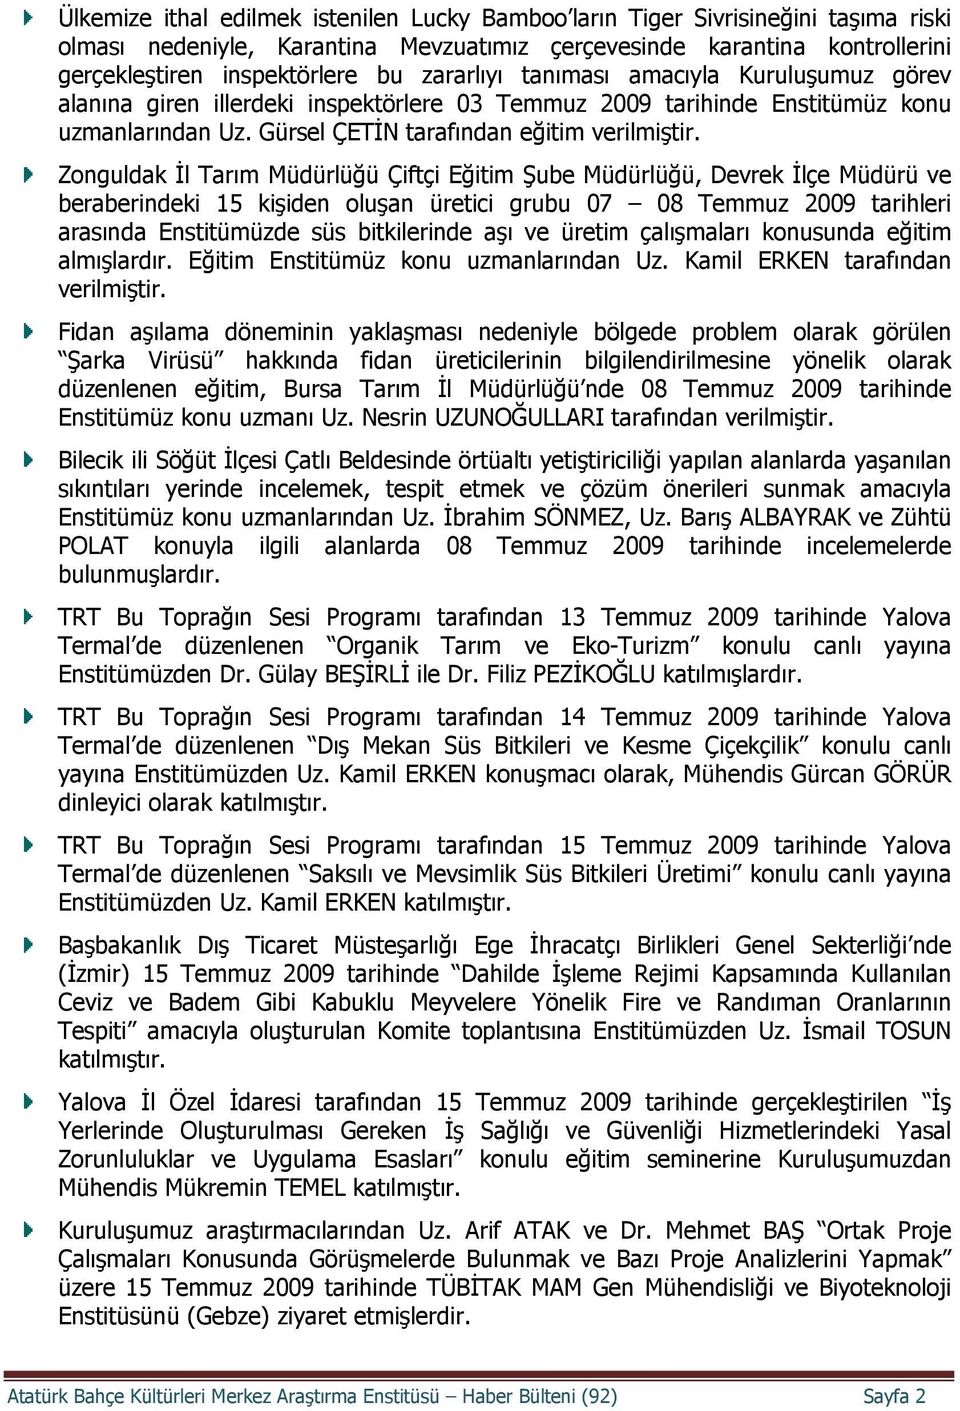 Zonguldak İl Tarım Müdürlüğü Çiftçi Eğitim Şube Müdürlüğü, Devrek İlçe Müdürü ve beraberindeki 15 kişiden oluşan üretici grubu 07 08 Temmuz 2009 tarihleri arasında Enstitümüzde süs bitkilerinde aşı